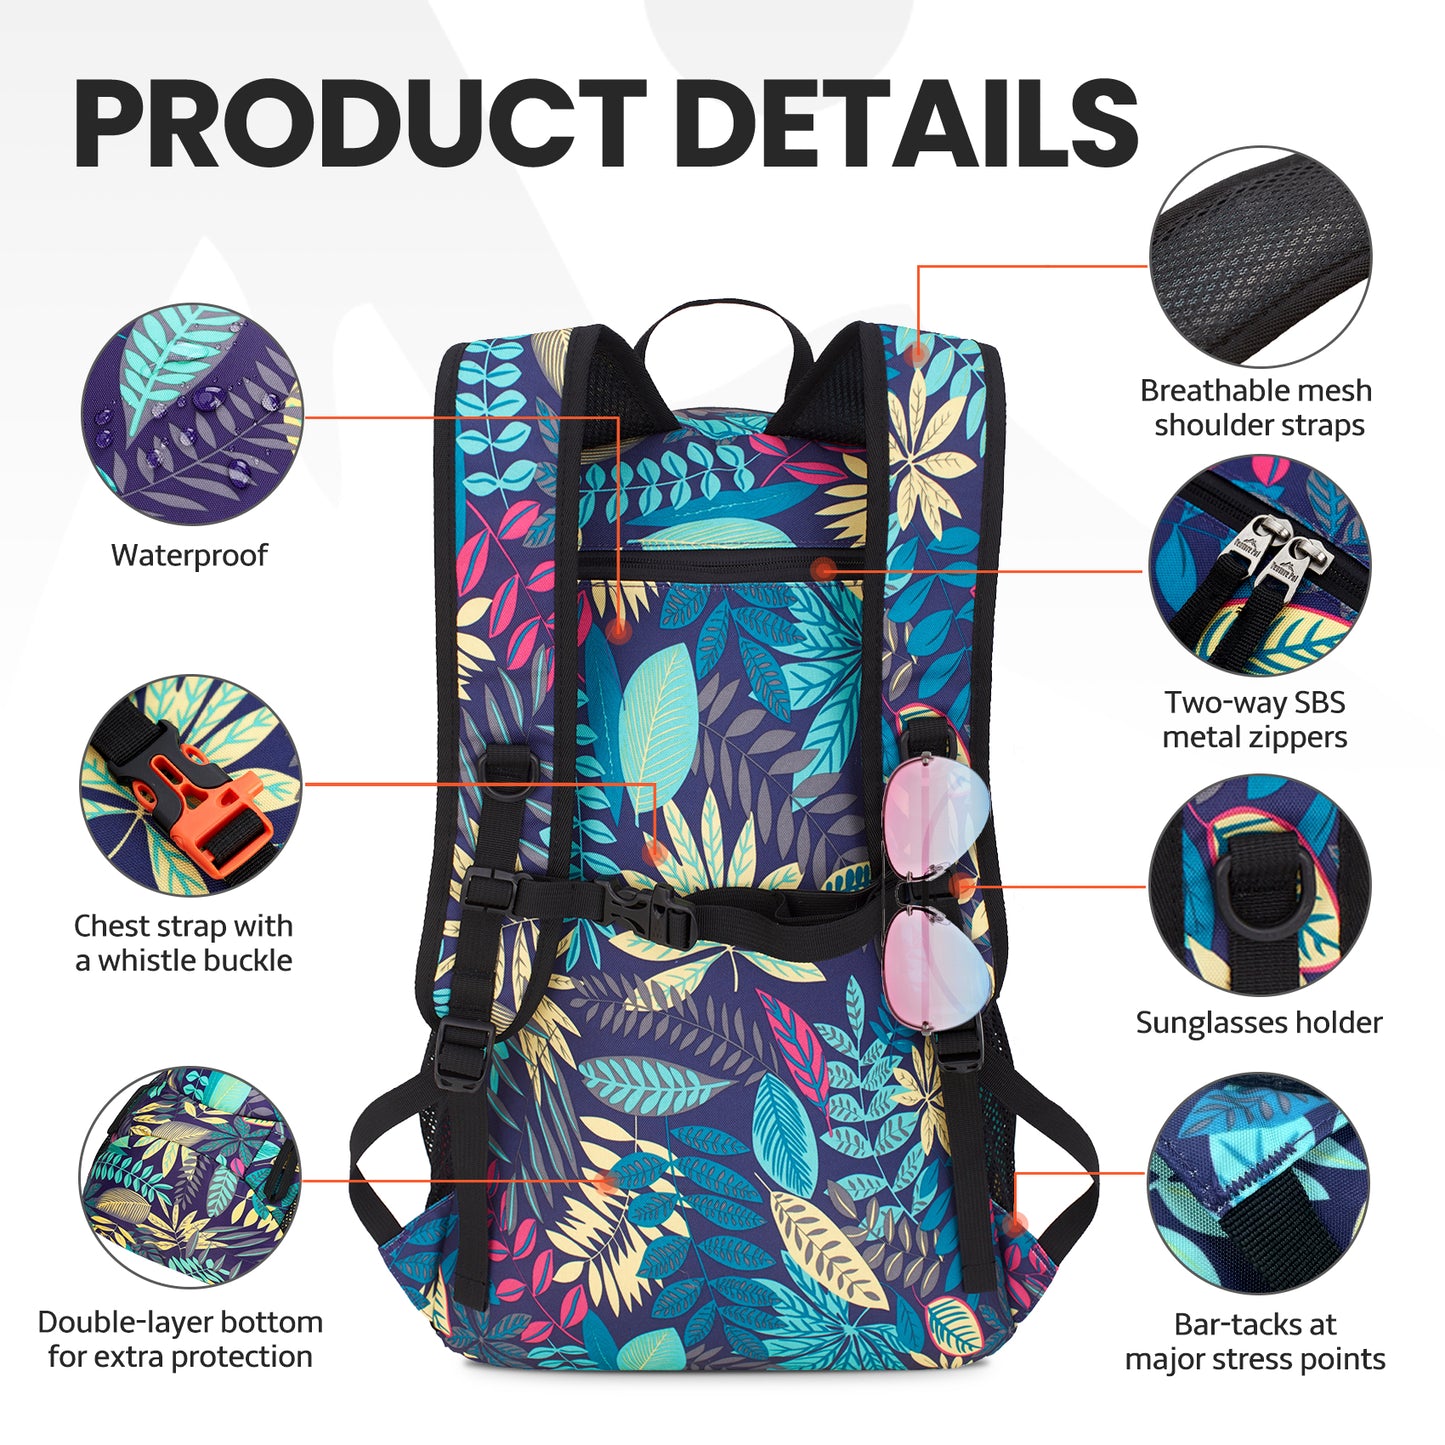 Venture Pal Purple Leaf Pattern Wet Pocket Design 40L Nylon Backpack